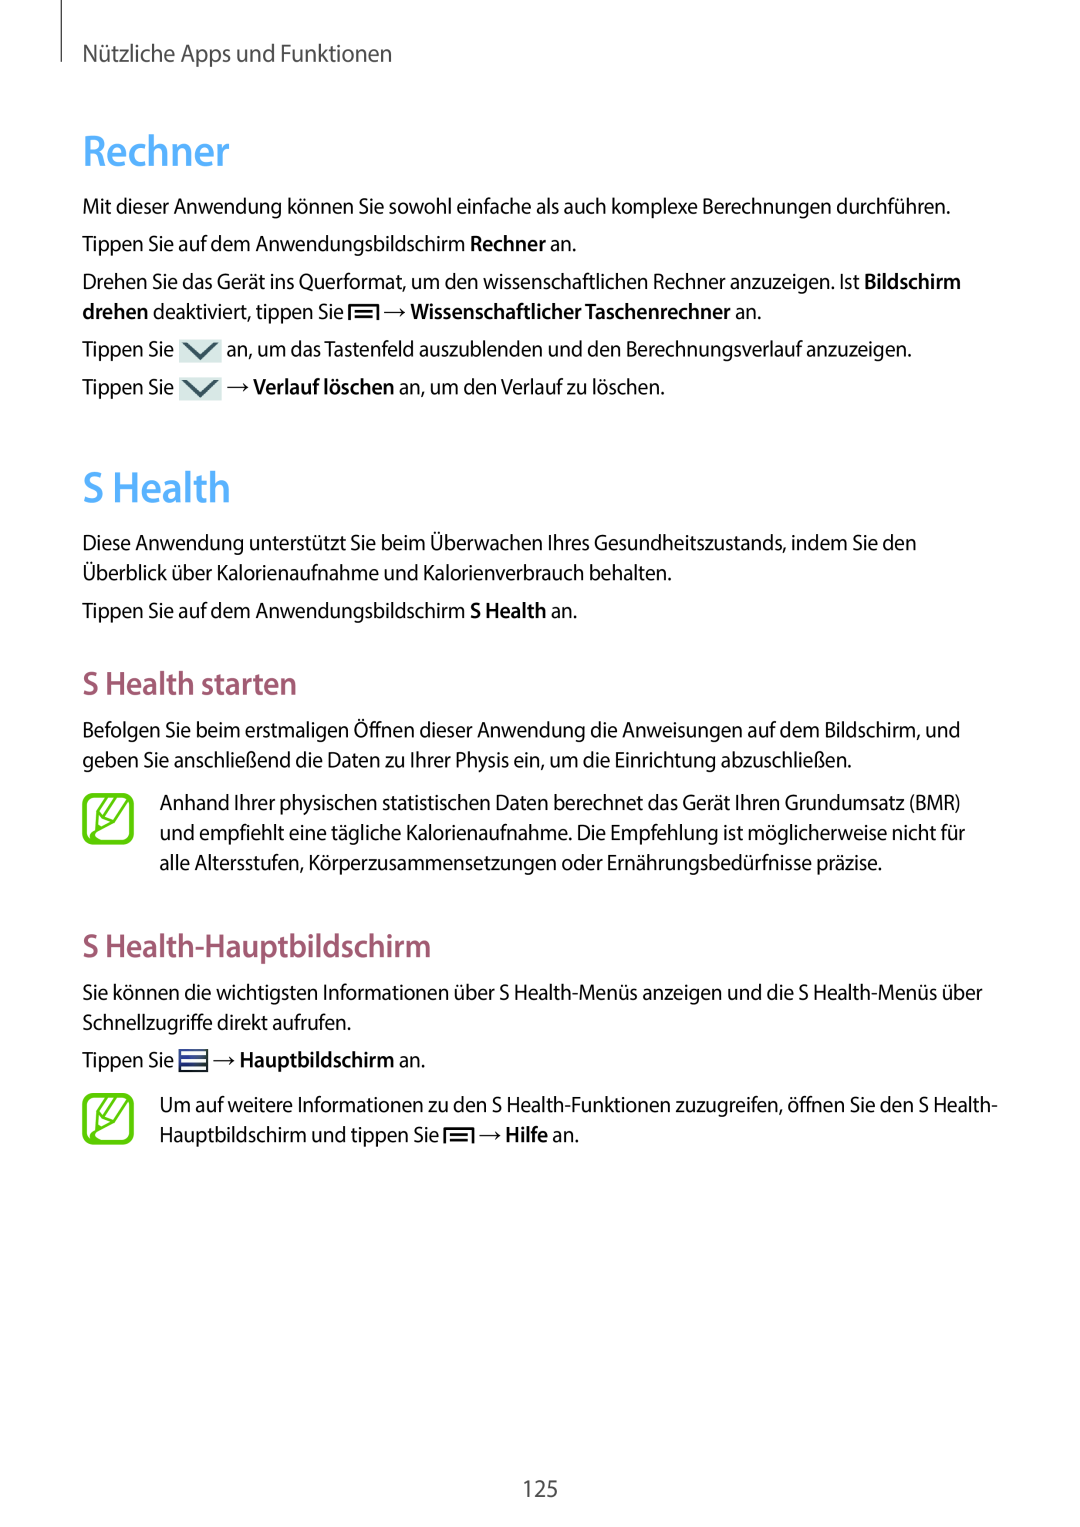 Samsung SM-N9005ZKETPH manual Rechner, S Health starten, S Health-Hauptbildschirm, Tippen Sie →Hauptbildschirm an 